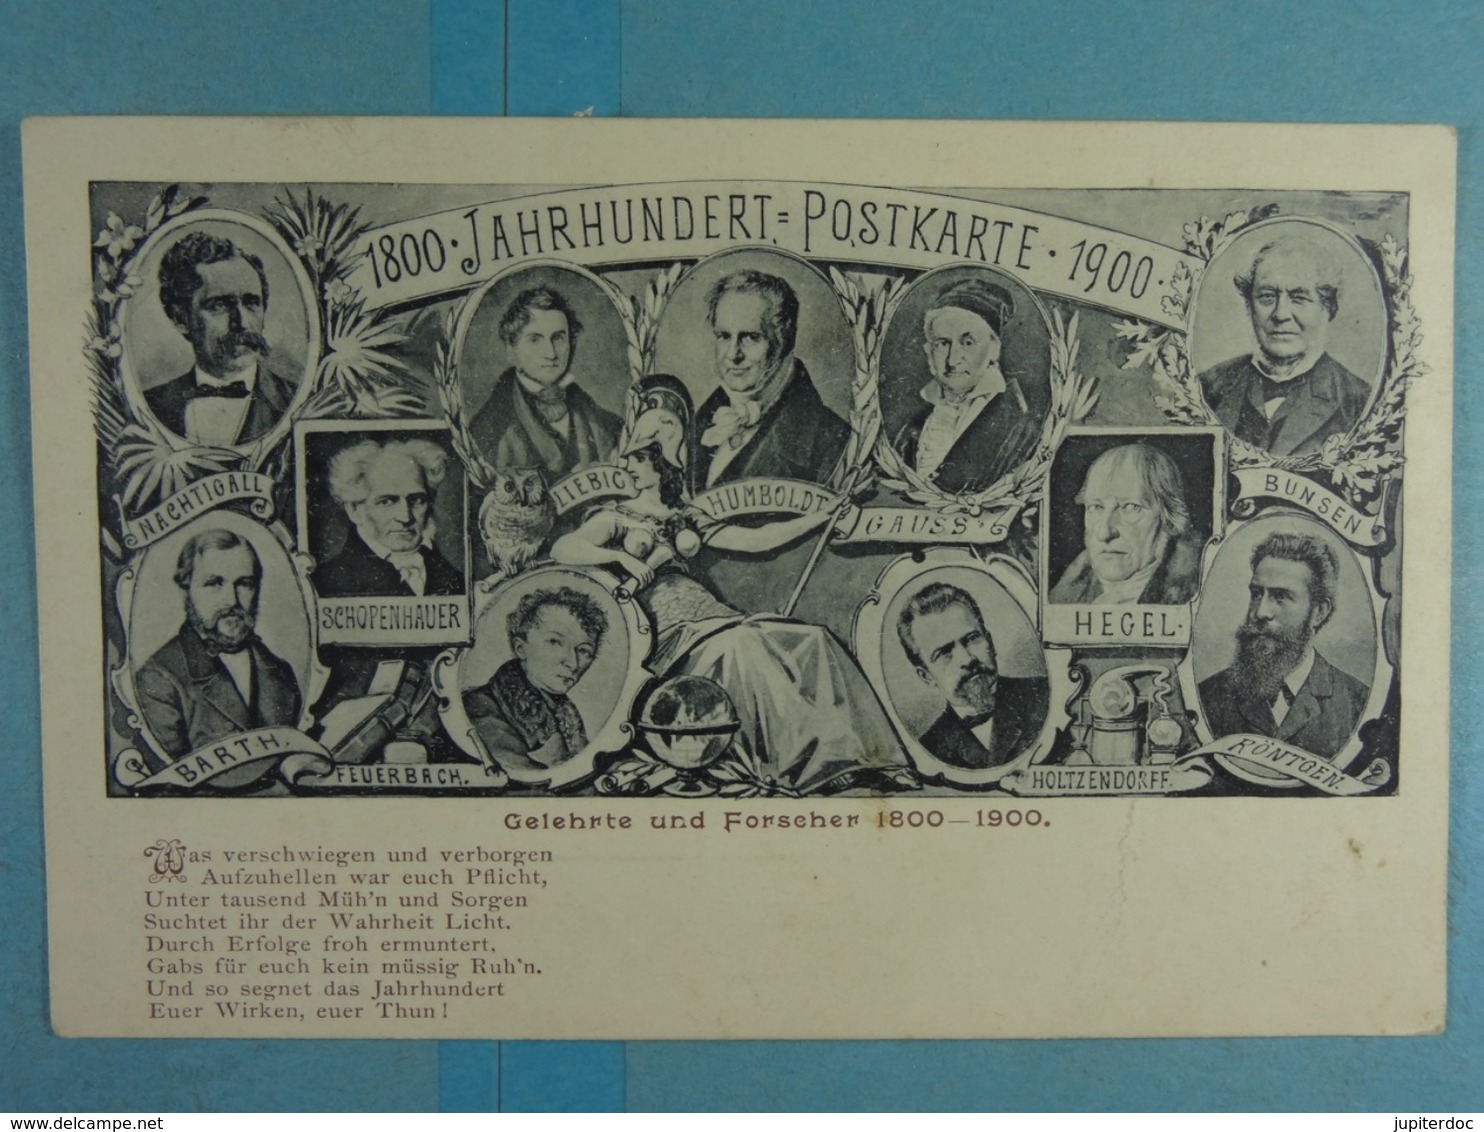 1800 Jahrhundert Postkarte 1900 Gelehrte Und Forscher 1800-1900 - Familias Reales